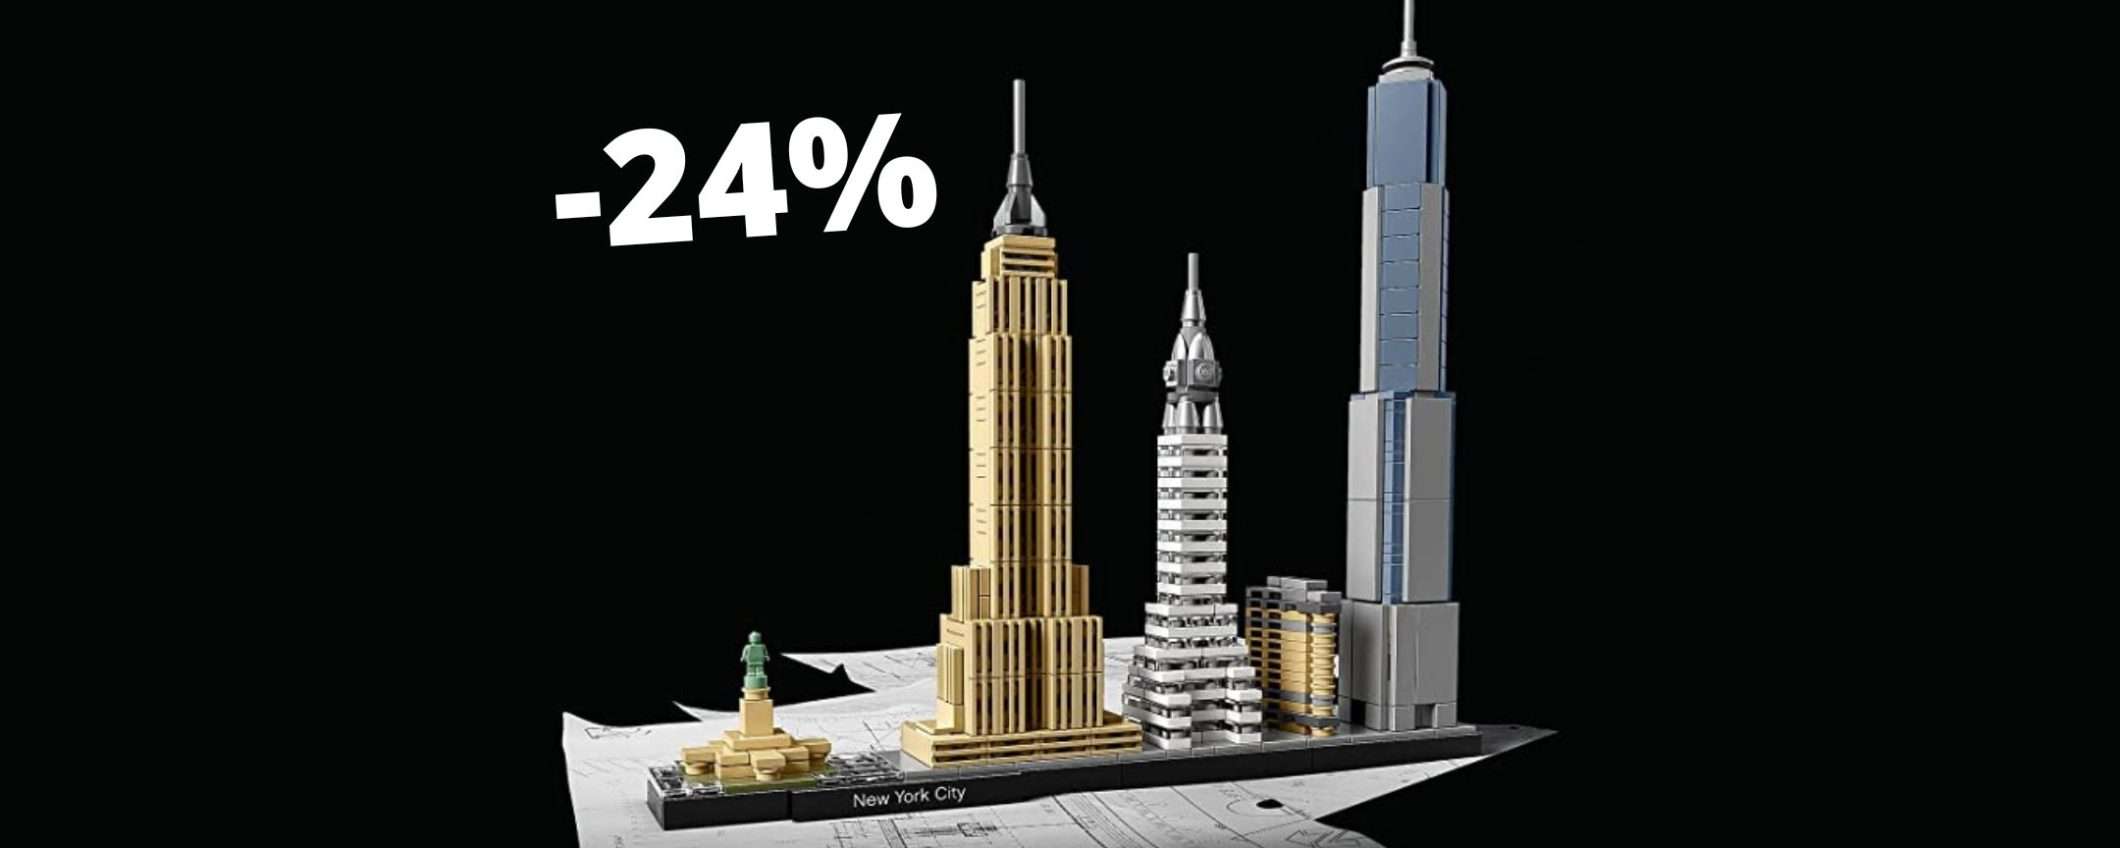 Lego Architecture: la collezione Skyline New York City in offerta su Amazon